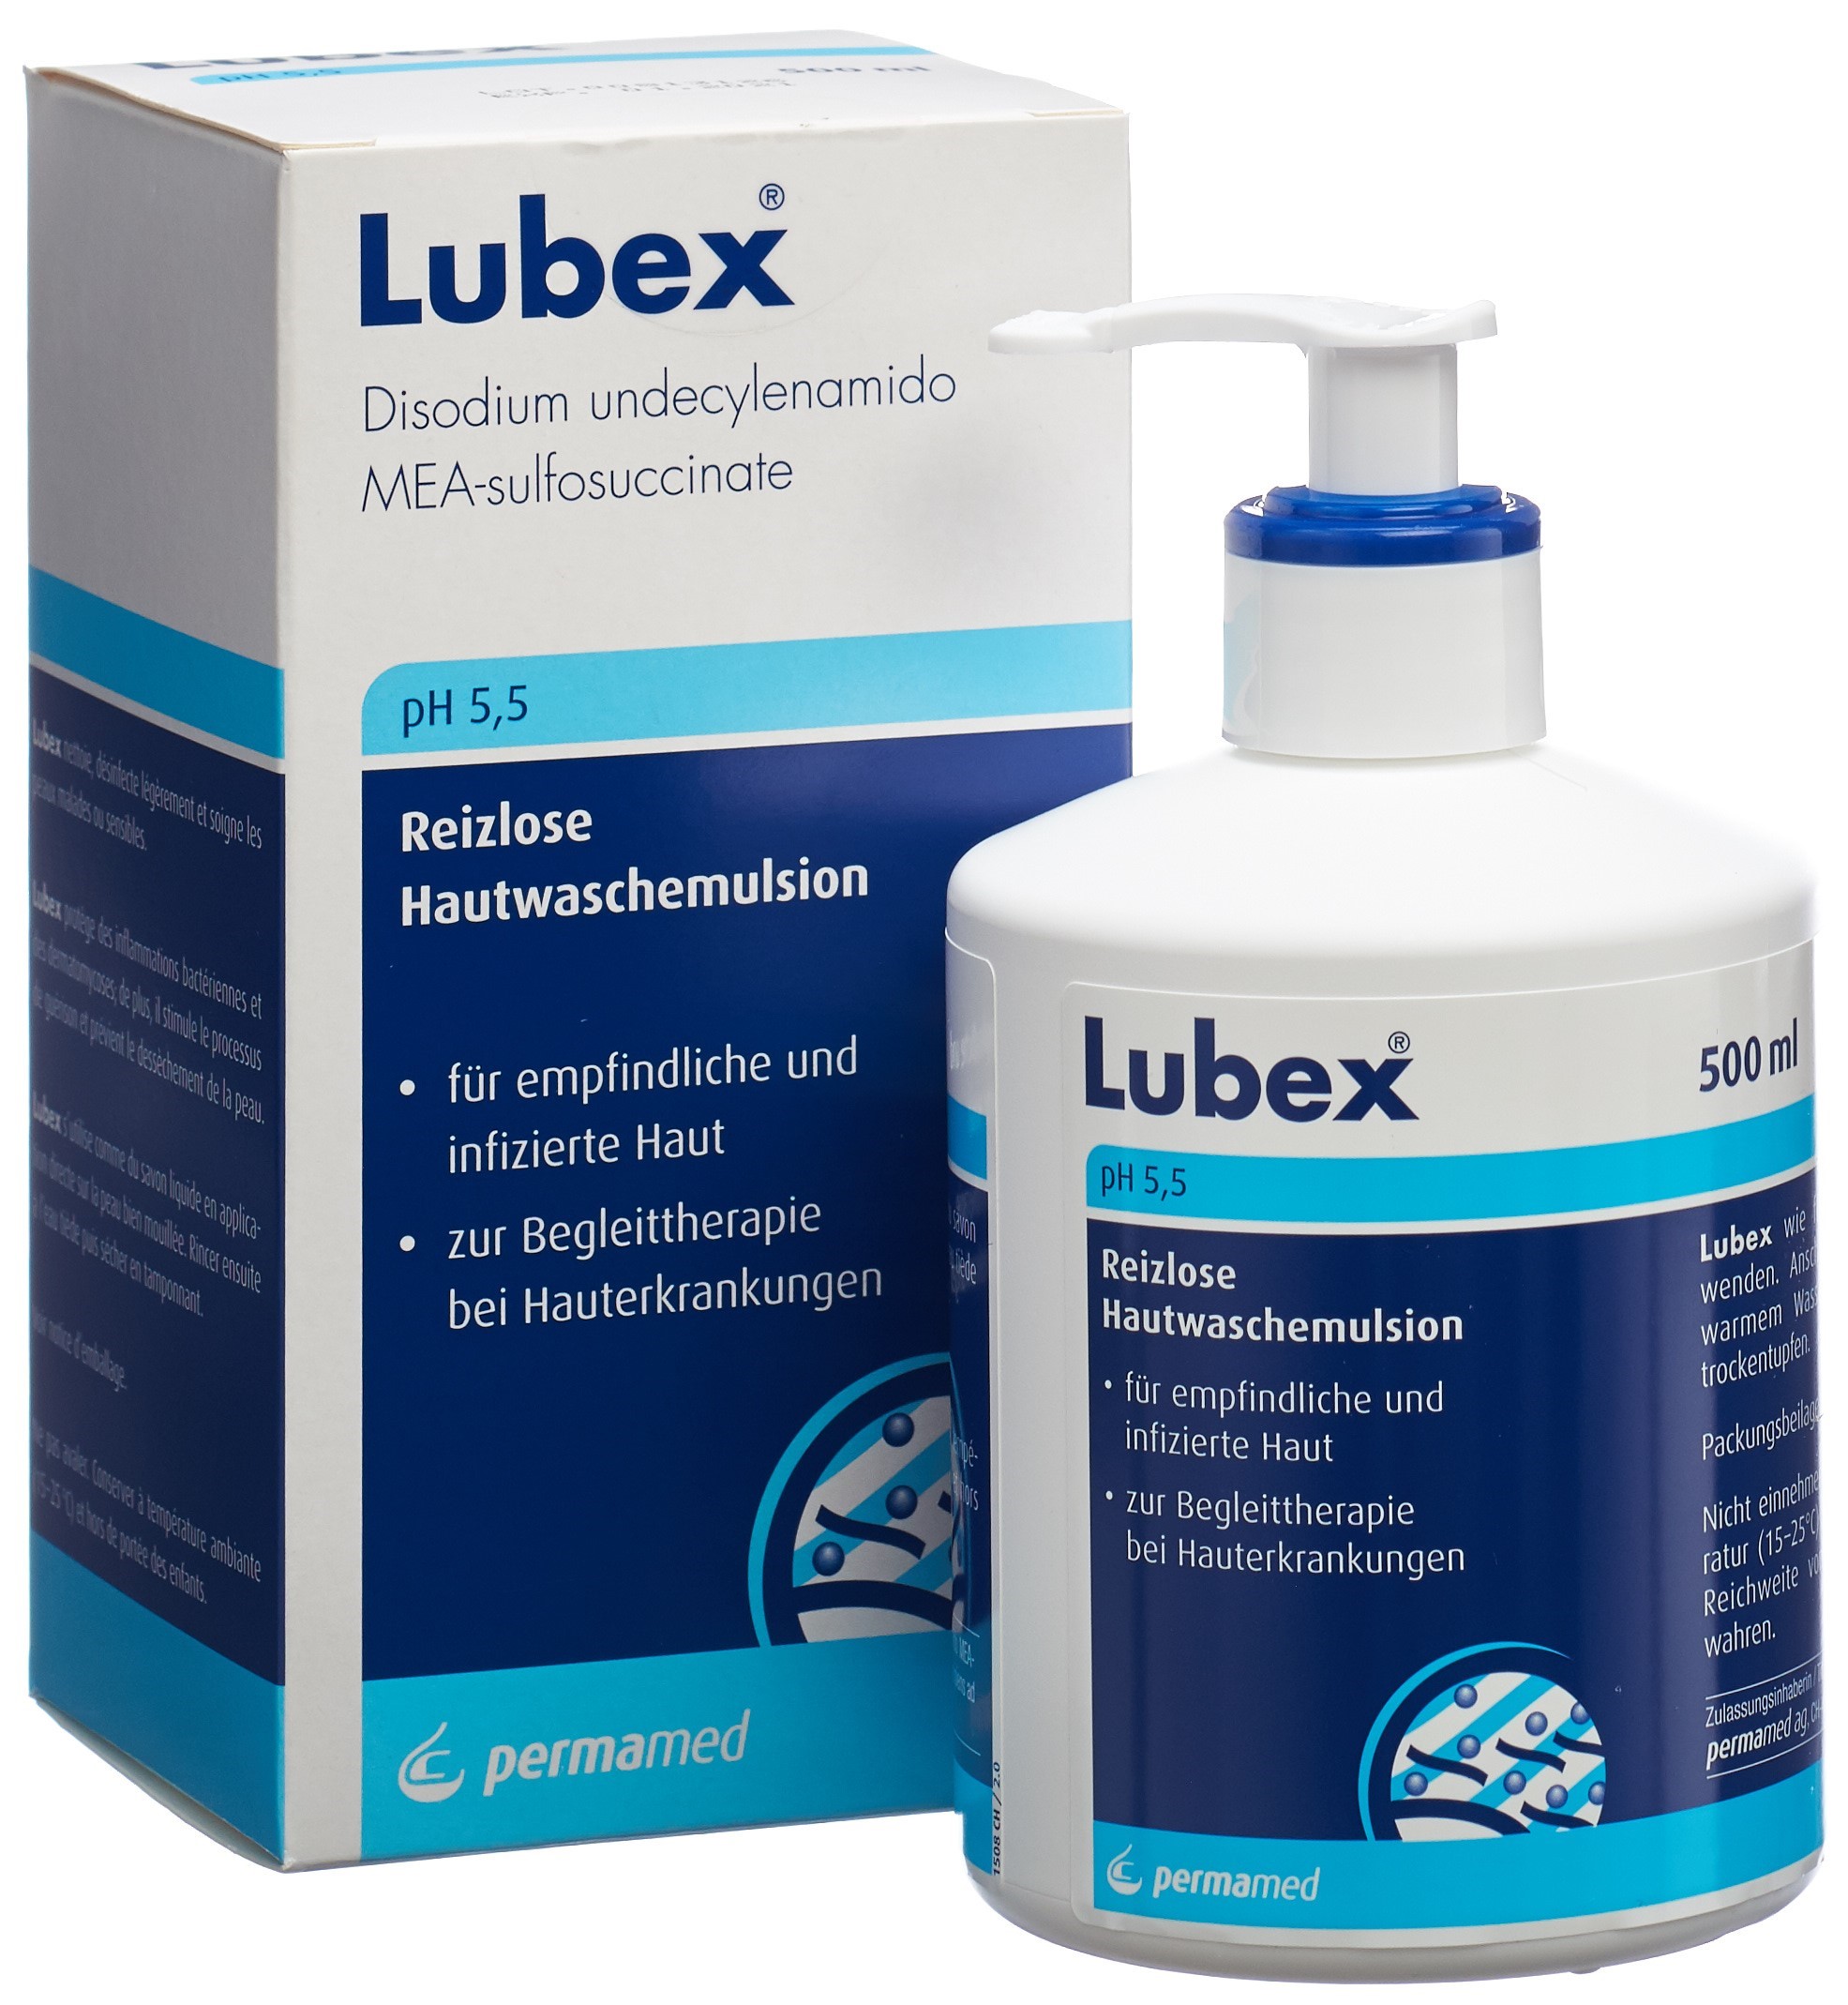 LUBEX Hautwaschemulsion pH 5.5 Disp 500 ml